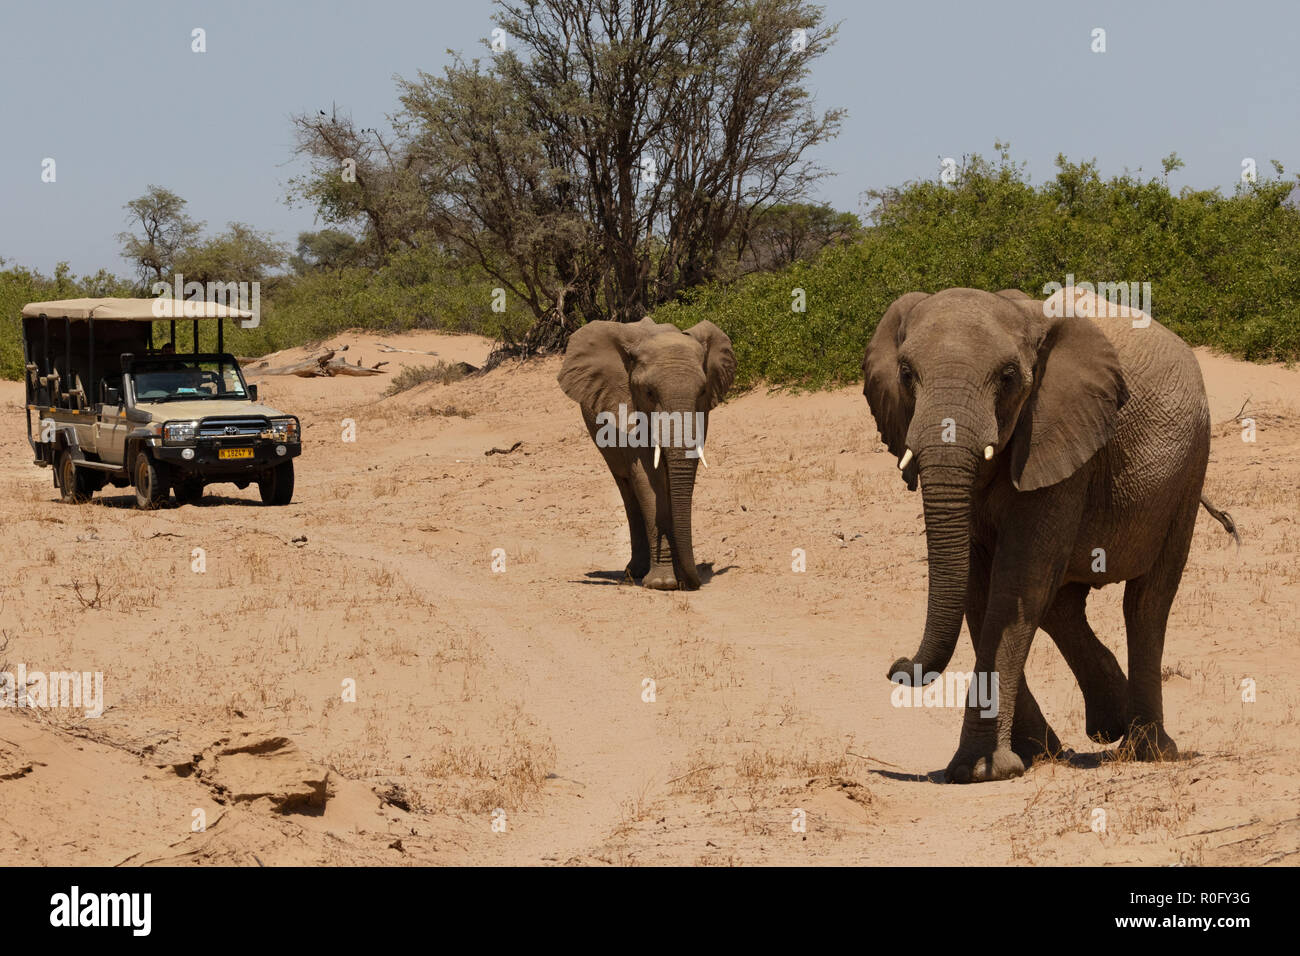 La Namibie safari - touristes sur un jeep safari à la recherche des éléphants du désert, au lit du fleuve Haub, Damaraland, Namibie, Afrique du Sud Banque D'Images